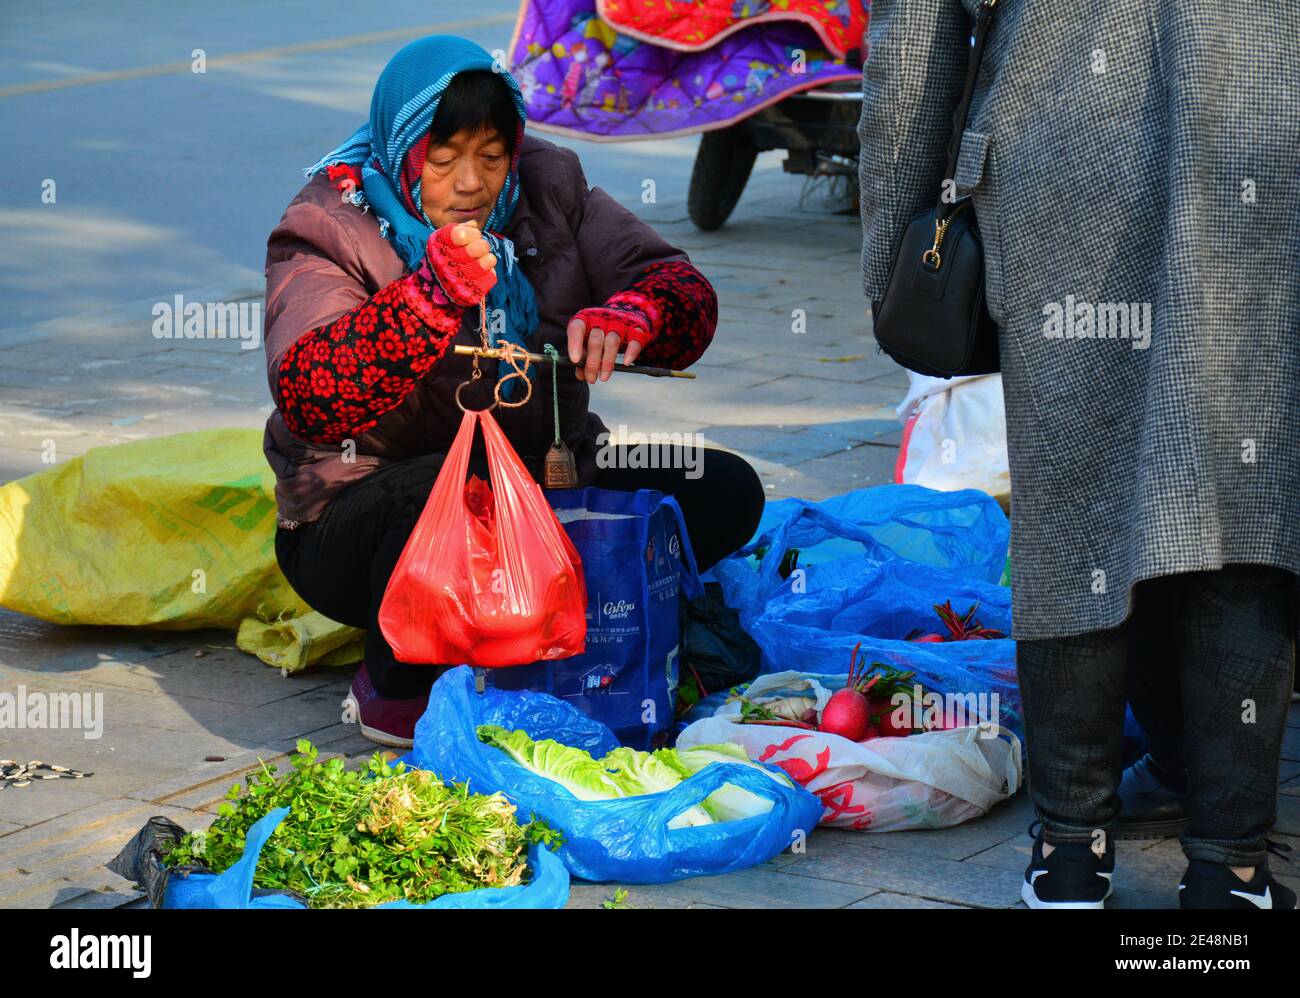 Donna che vende frutta e verdura per strada, utilizzando scale molto vecchio stile per pesare gli oggetti. Foto Stock